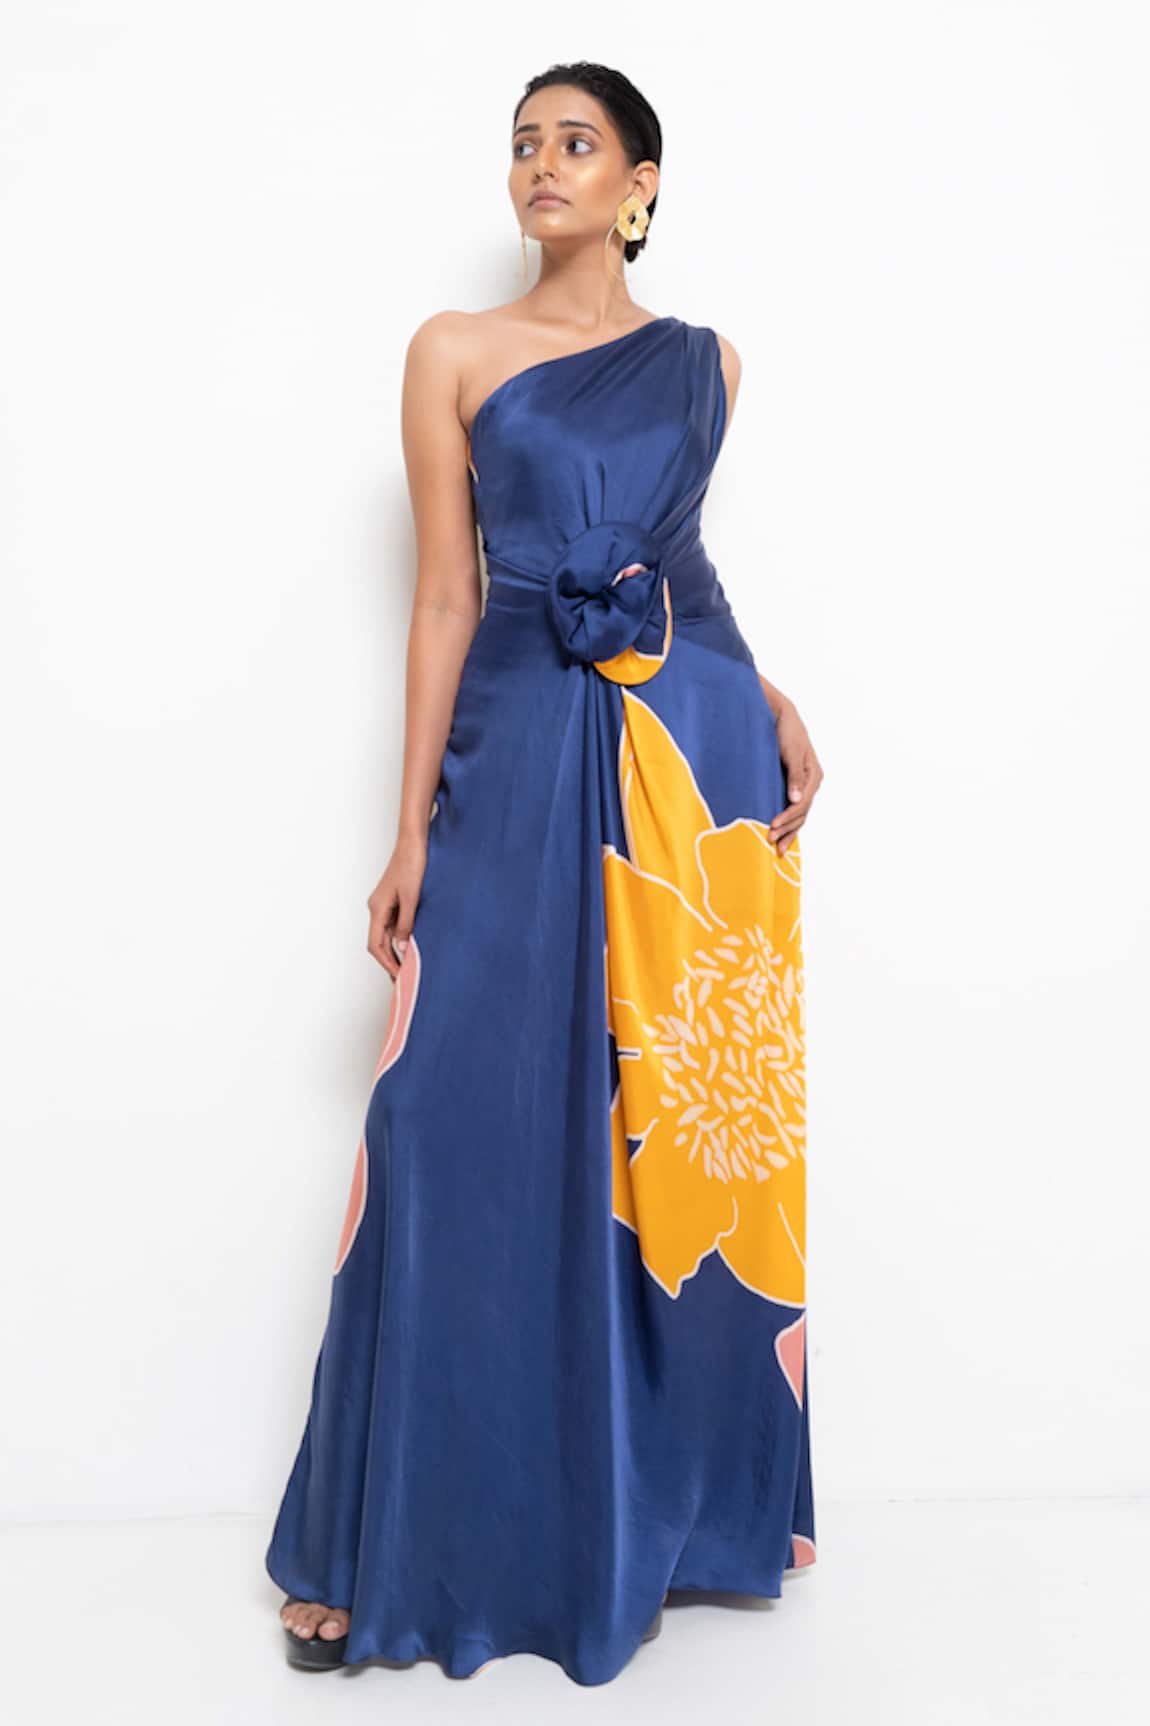 Rimi Nayak Floral Print One Shoulder Dress